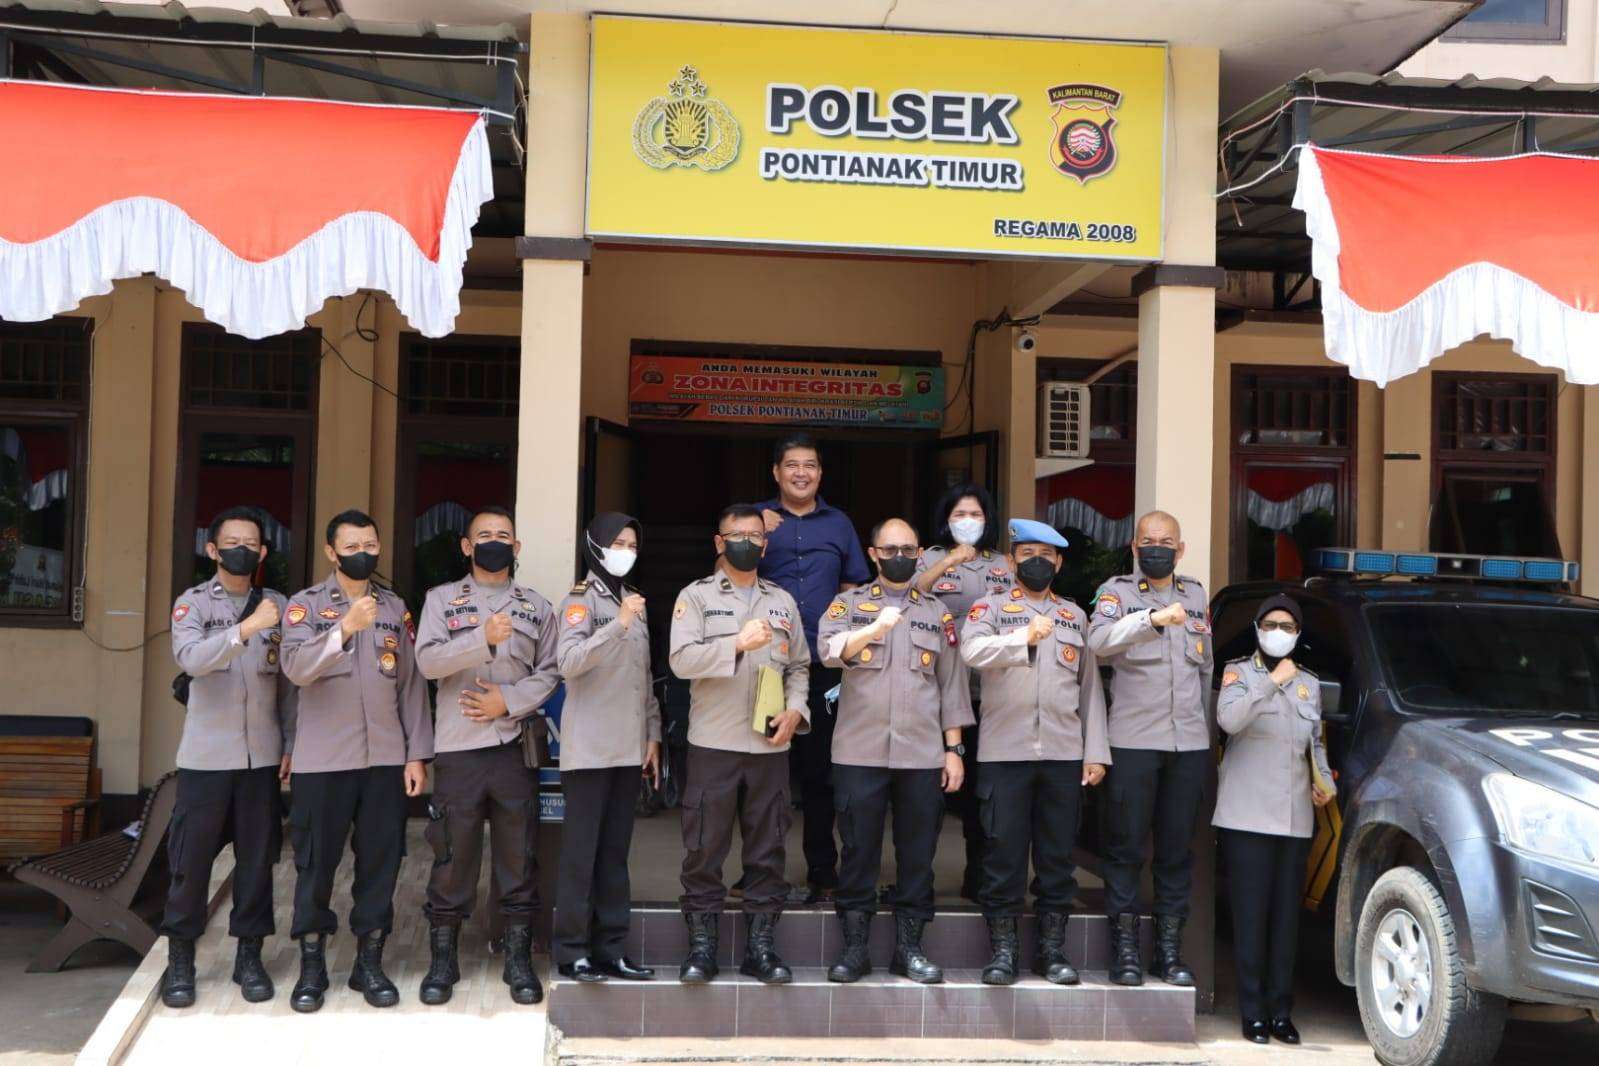 Polresta Pontianak  mengadakan lomba kebersihan mako dan polsek jajaran dalam rangka memeriahkan Hari Bhayangkara ke-76 yang jatuh pada tanggal 1 Juli 2022 mendatang. (Foto: Istimewa)